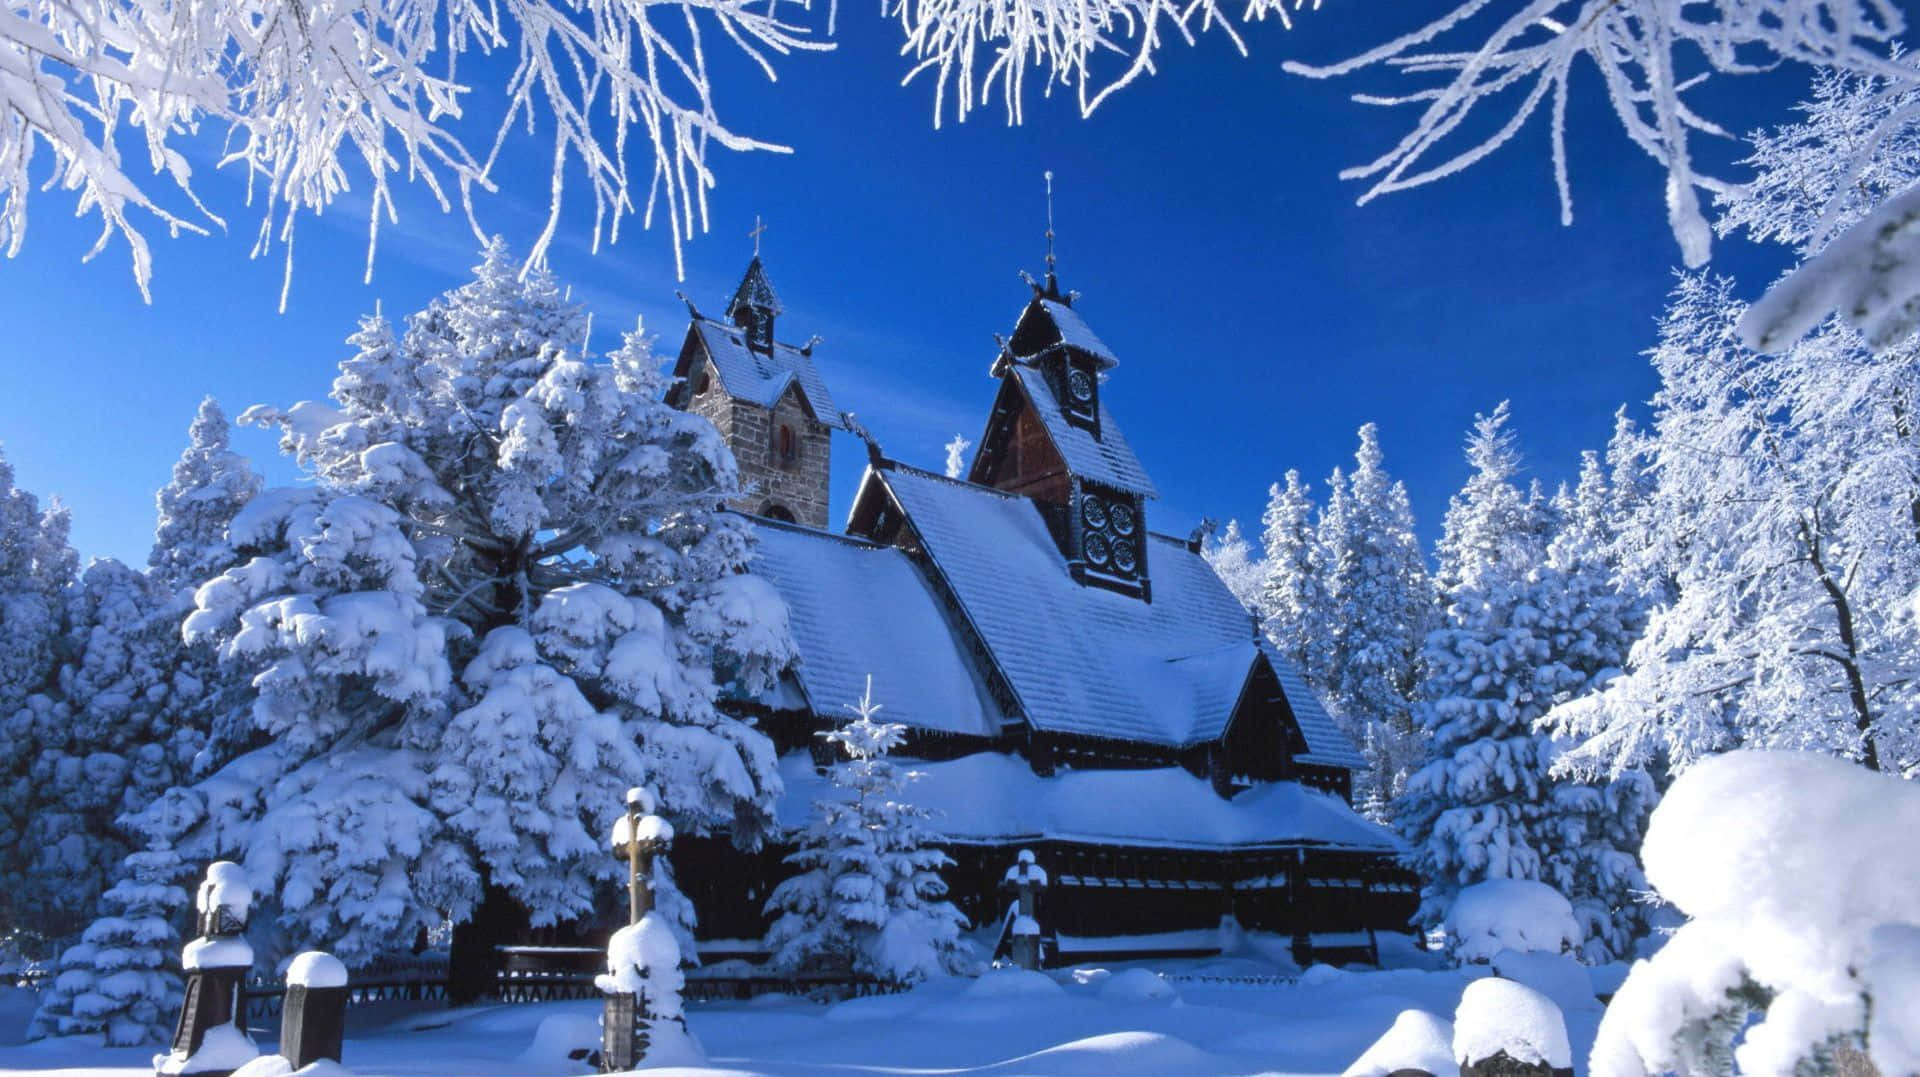 Church In Winter Scenery Desktop Wallpaper